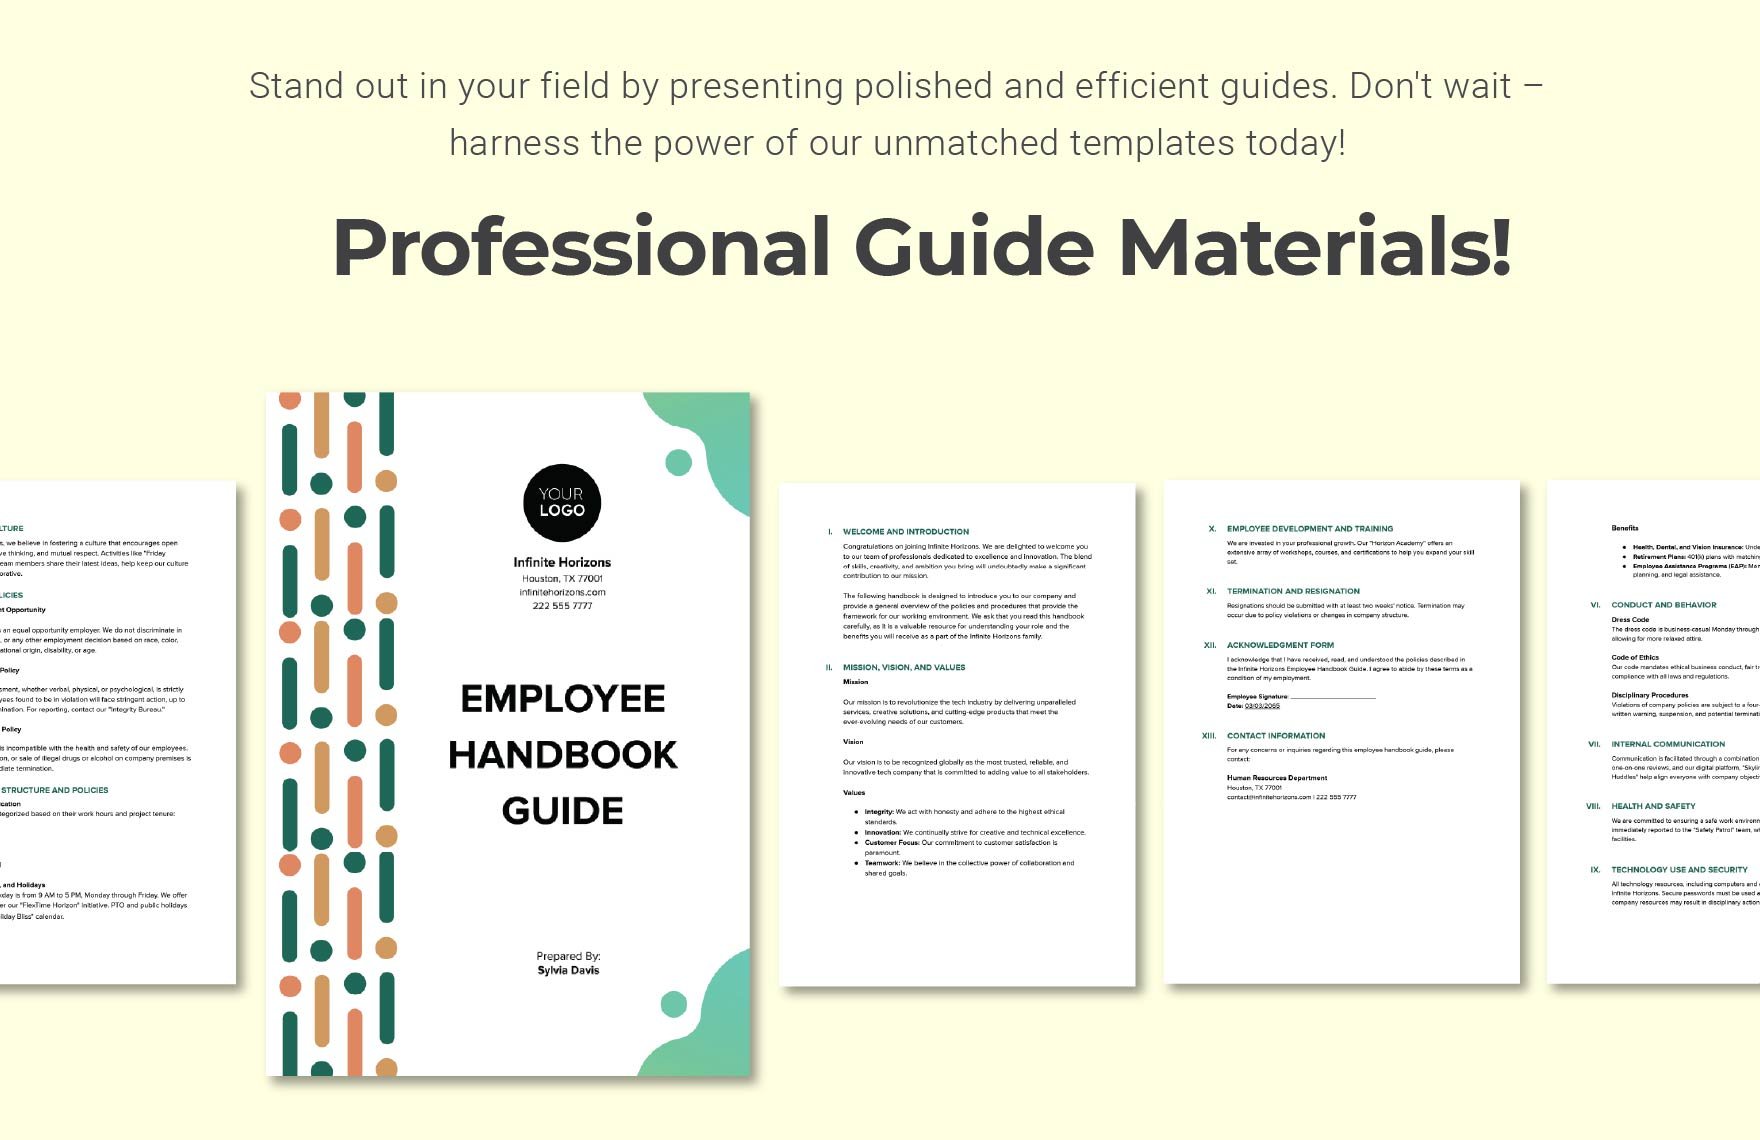 Employee Handbook Guide Template